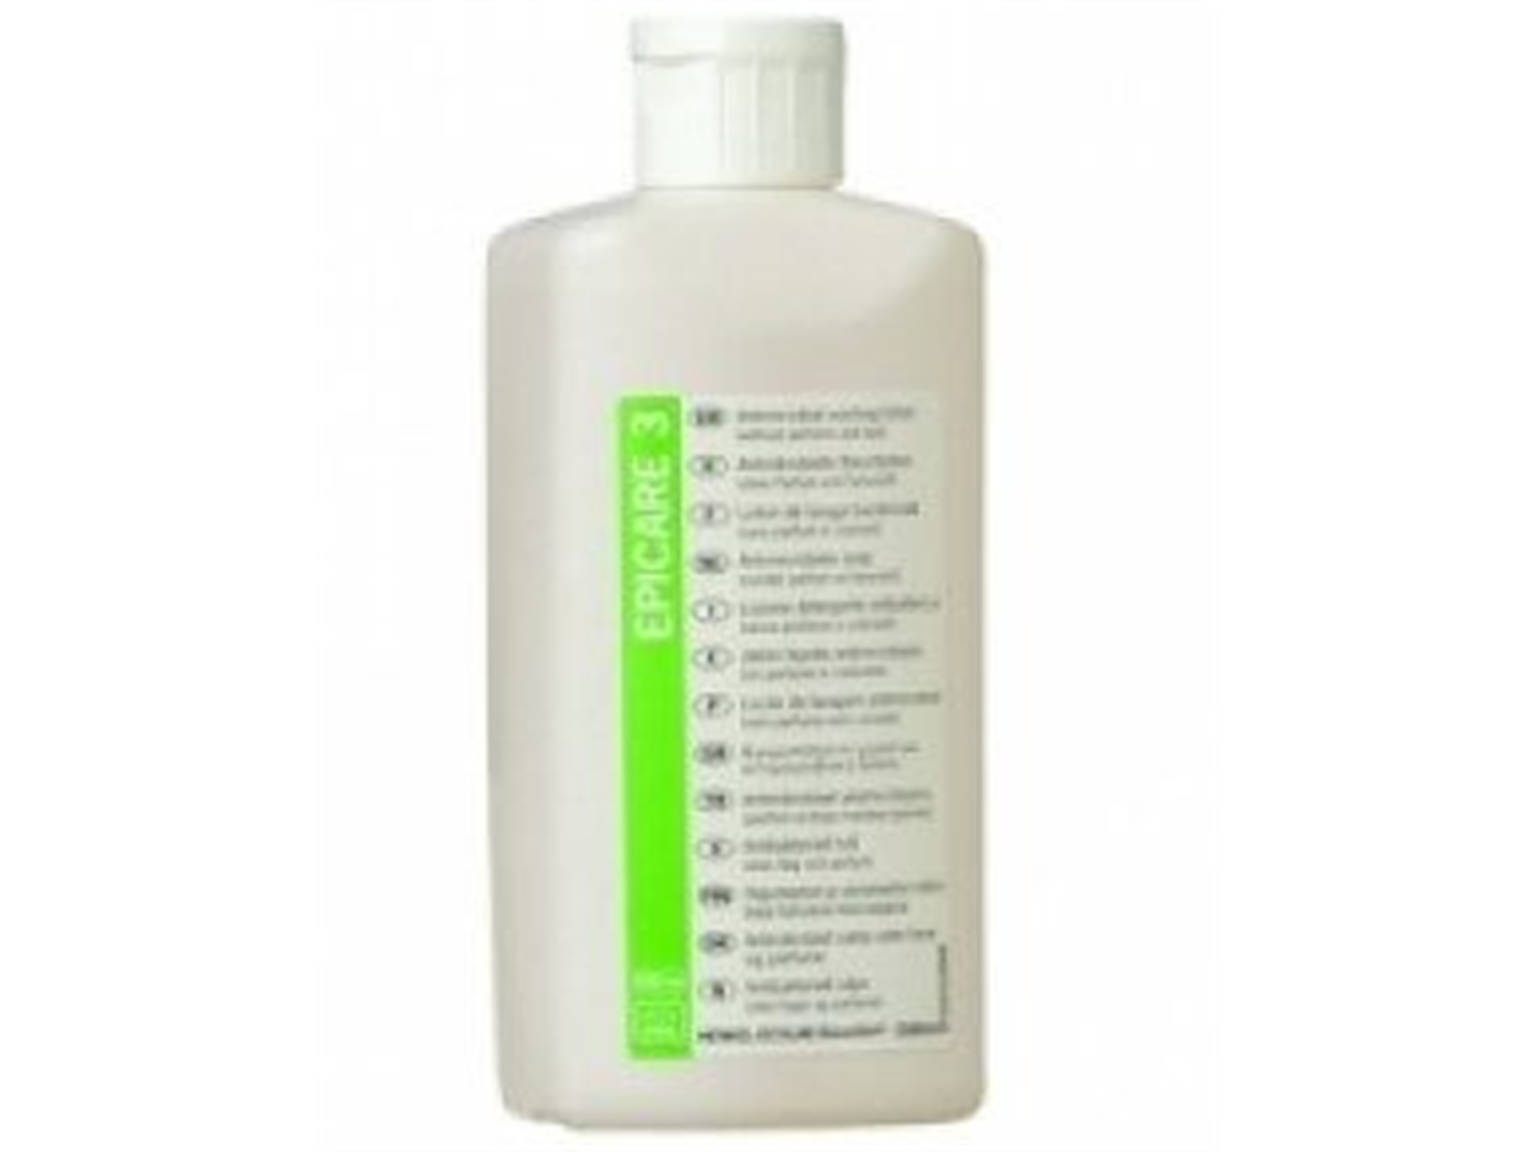 Antimikrobielle Waschlotion, Epicar 3, 500 ml, parfüm- und farbstofffrei